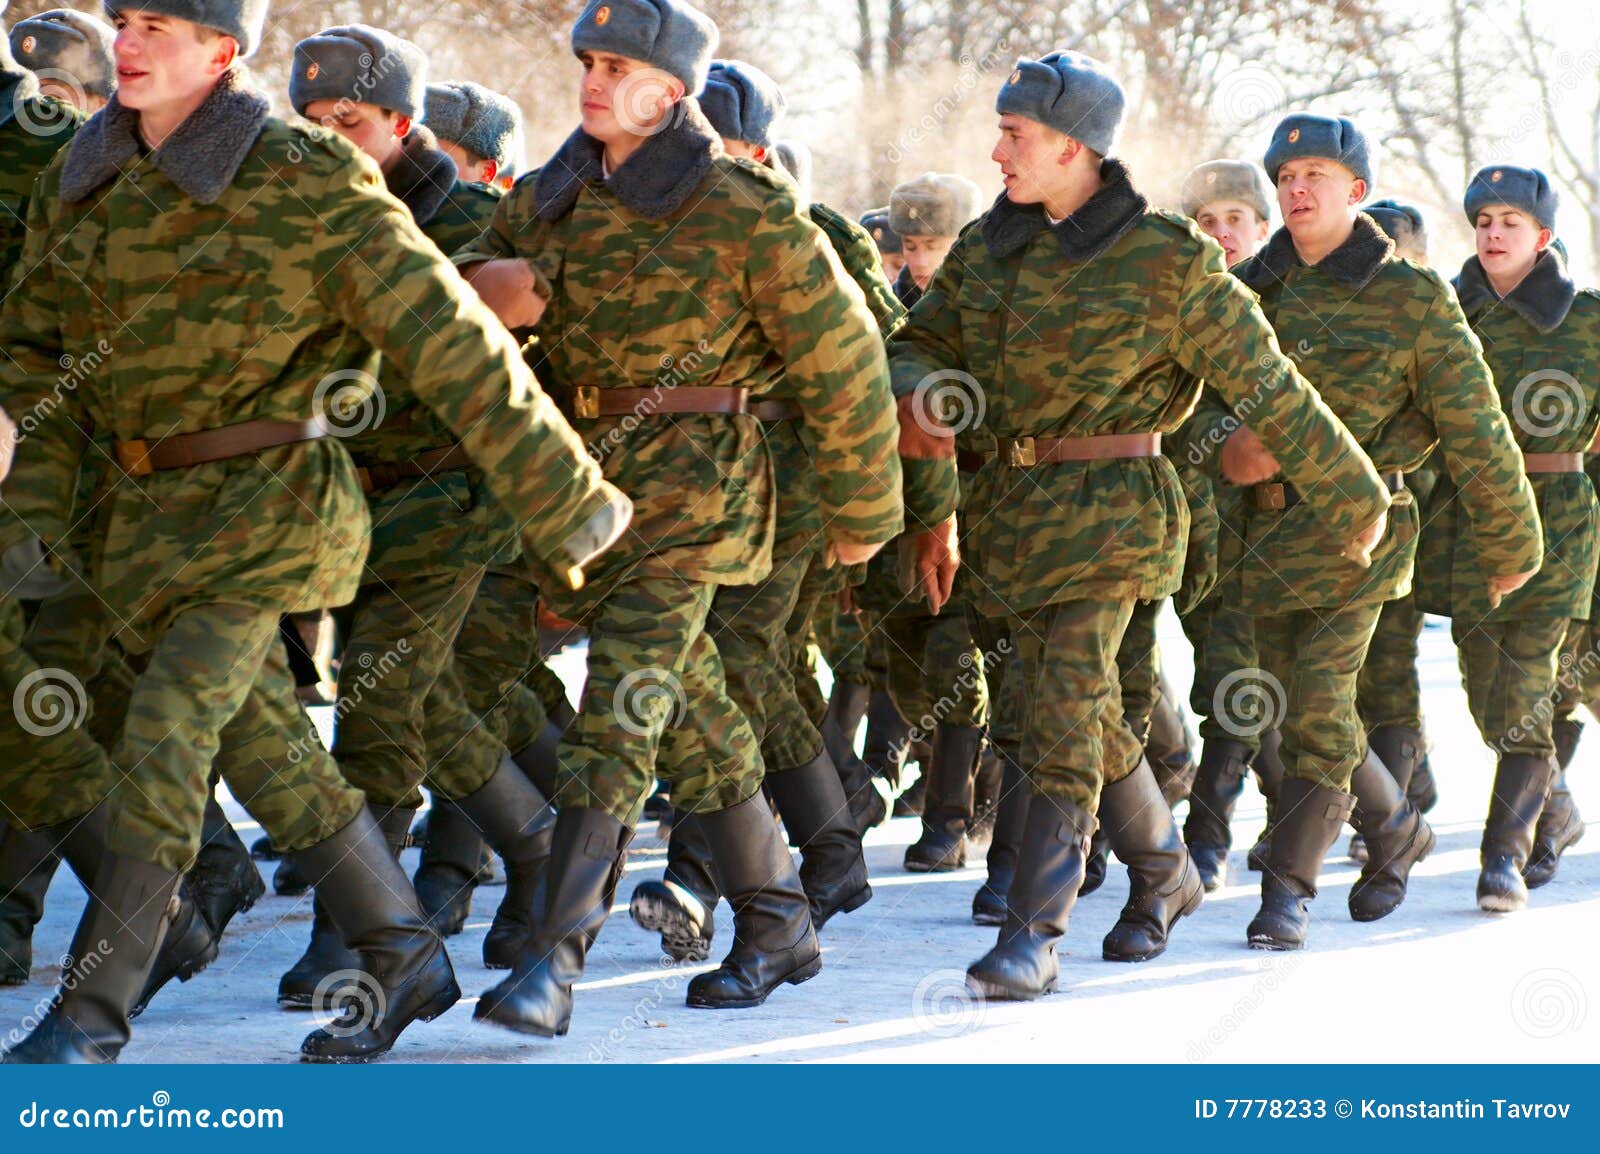 09.01.2009 Russland, Ostrogozhsk, Militäreid, russische Armee